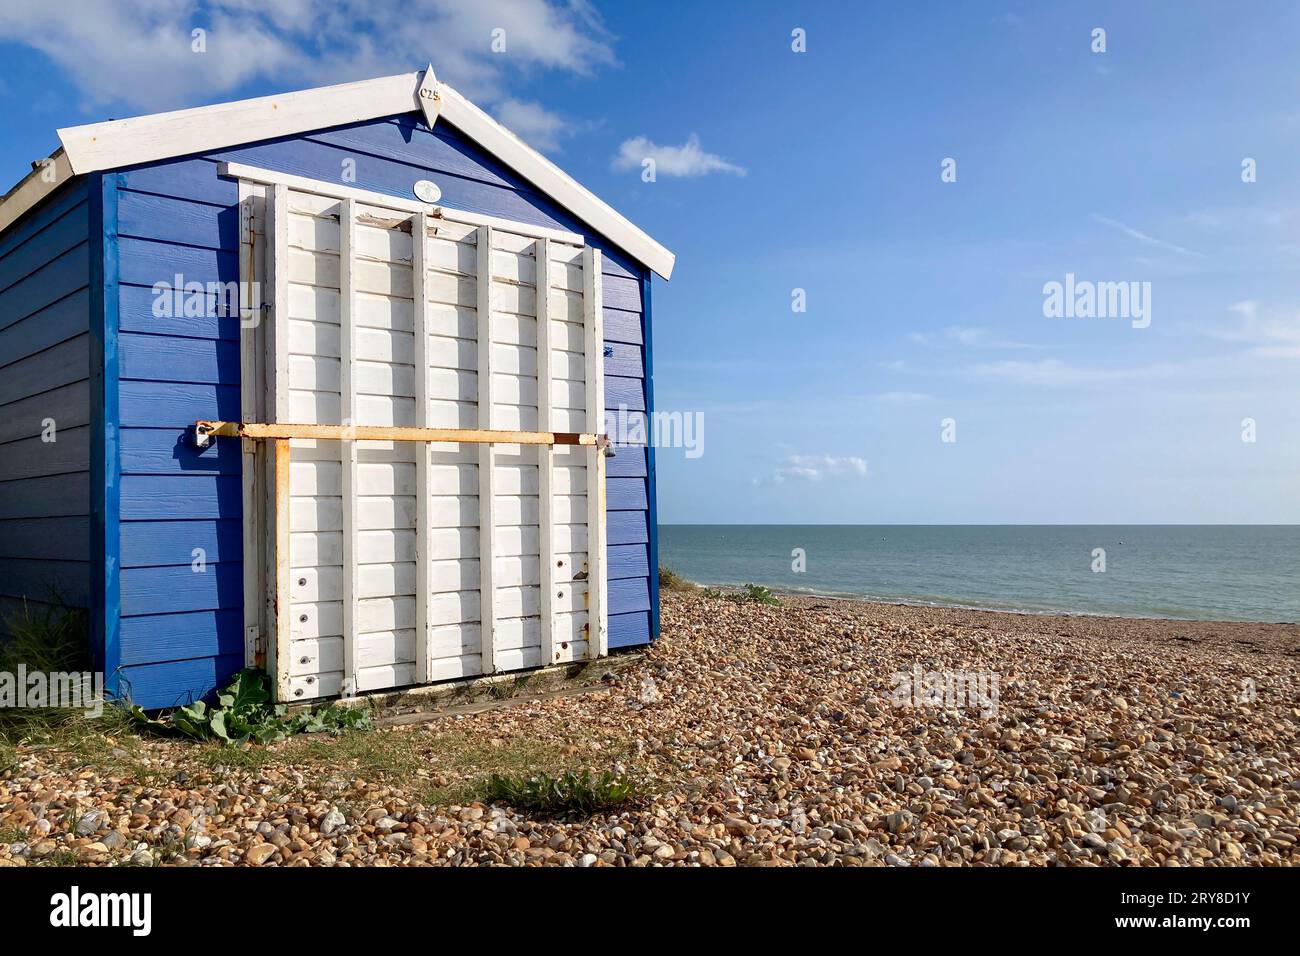 Cabane de plage bleue avec une porte blanche se dresse contre le ciel bleu et la mer à la plage. Southampton, Royaume-Uni, Angleterre Banque D'Images